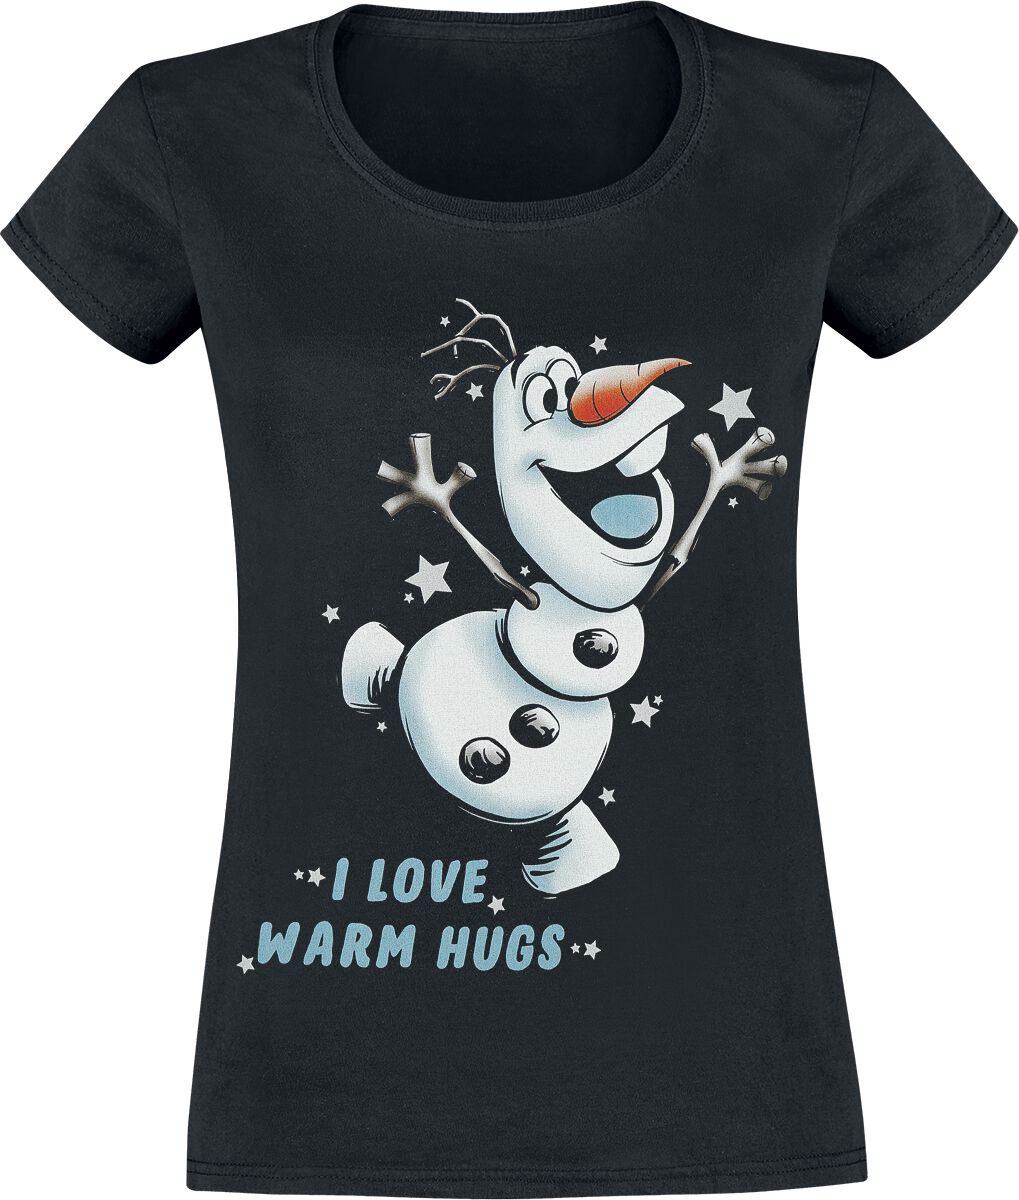 T-Shirt Manches courtes Disney de La Reine Des Neiges - Olaf - I Love Warm Hugs - S à L - pour Femme